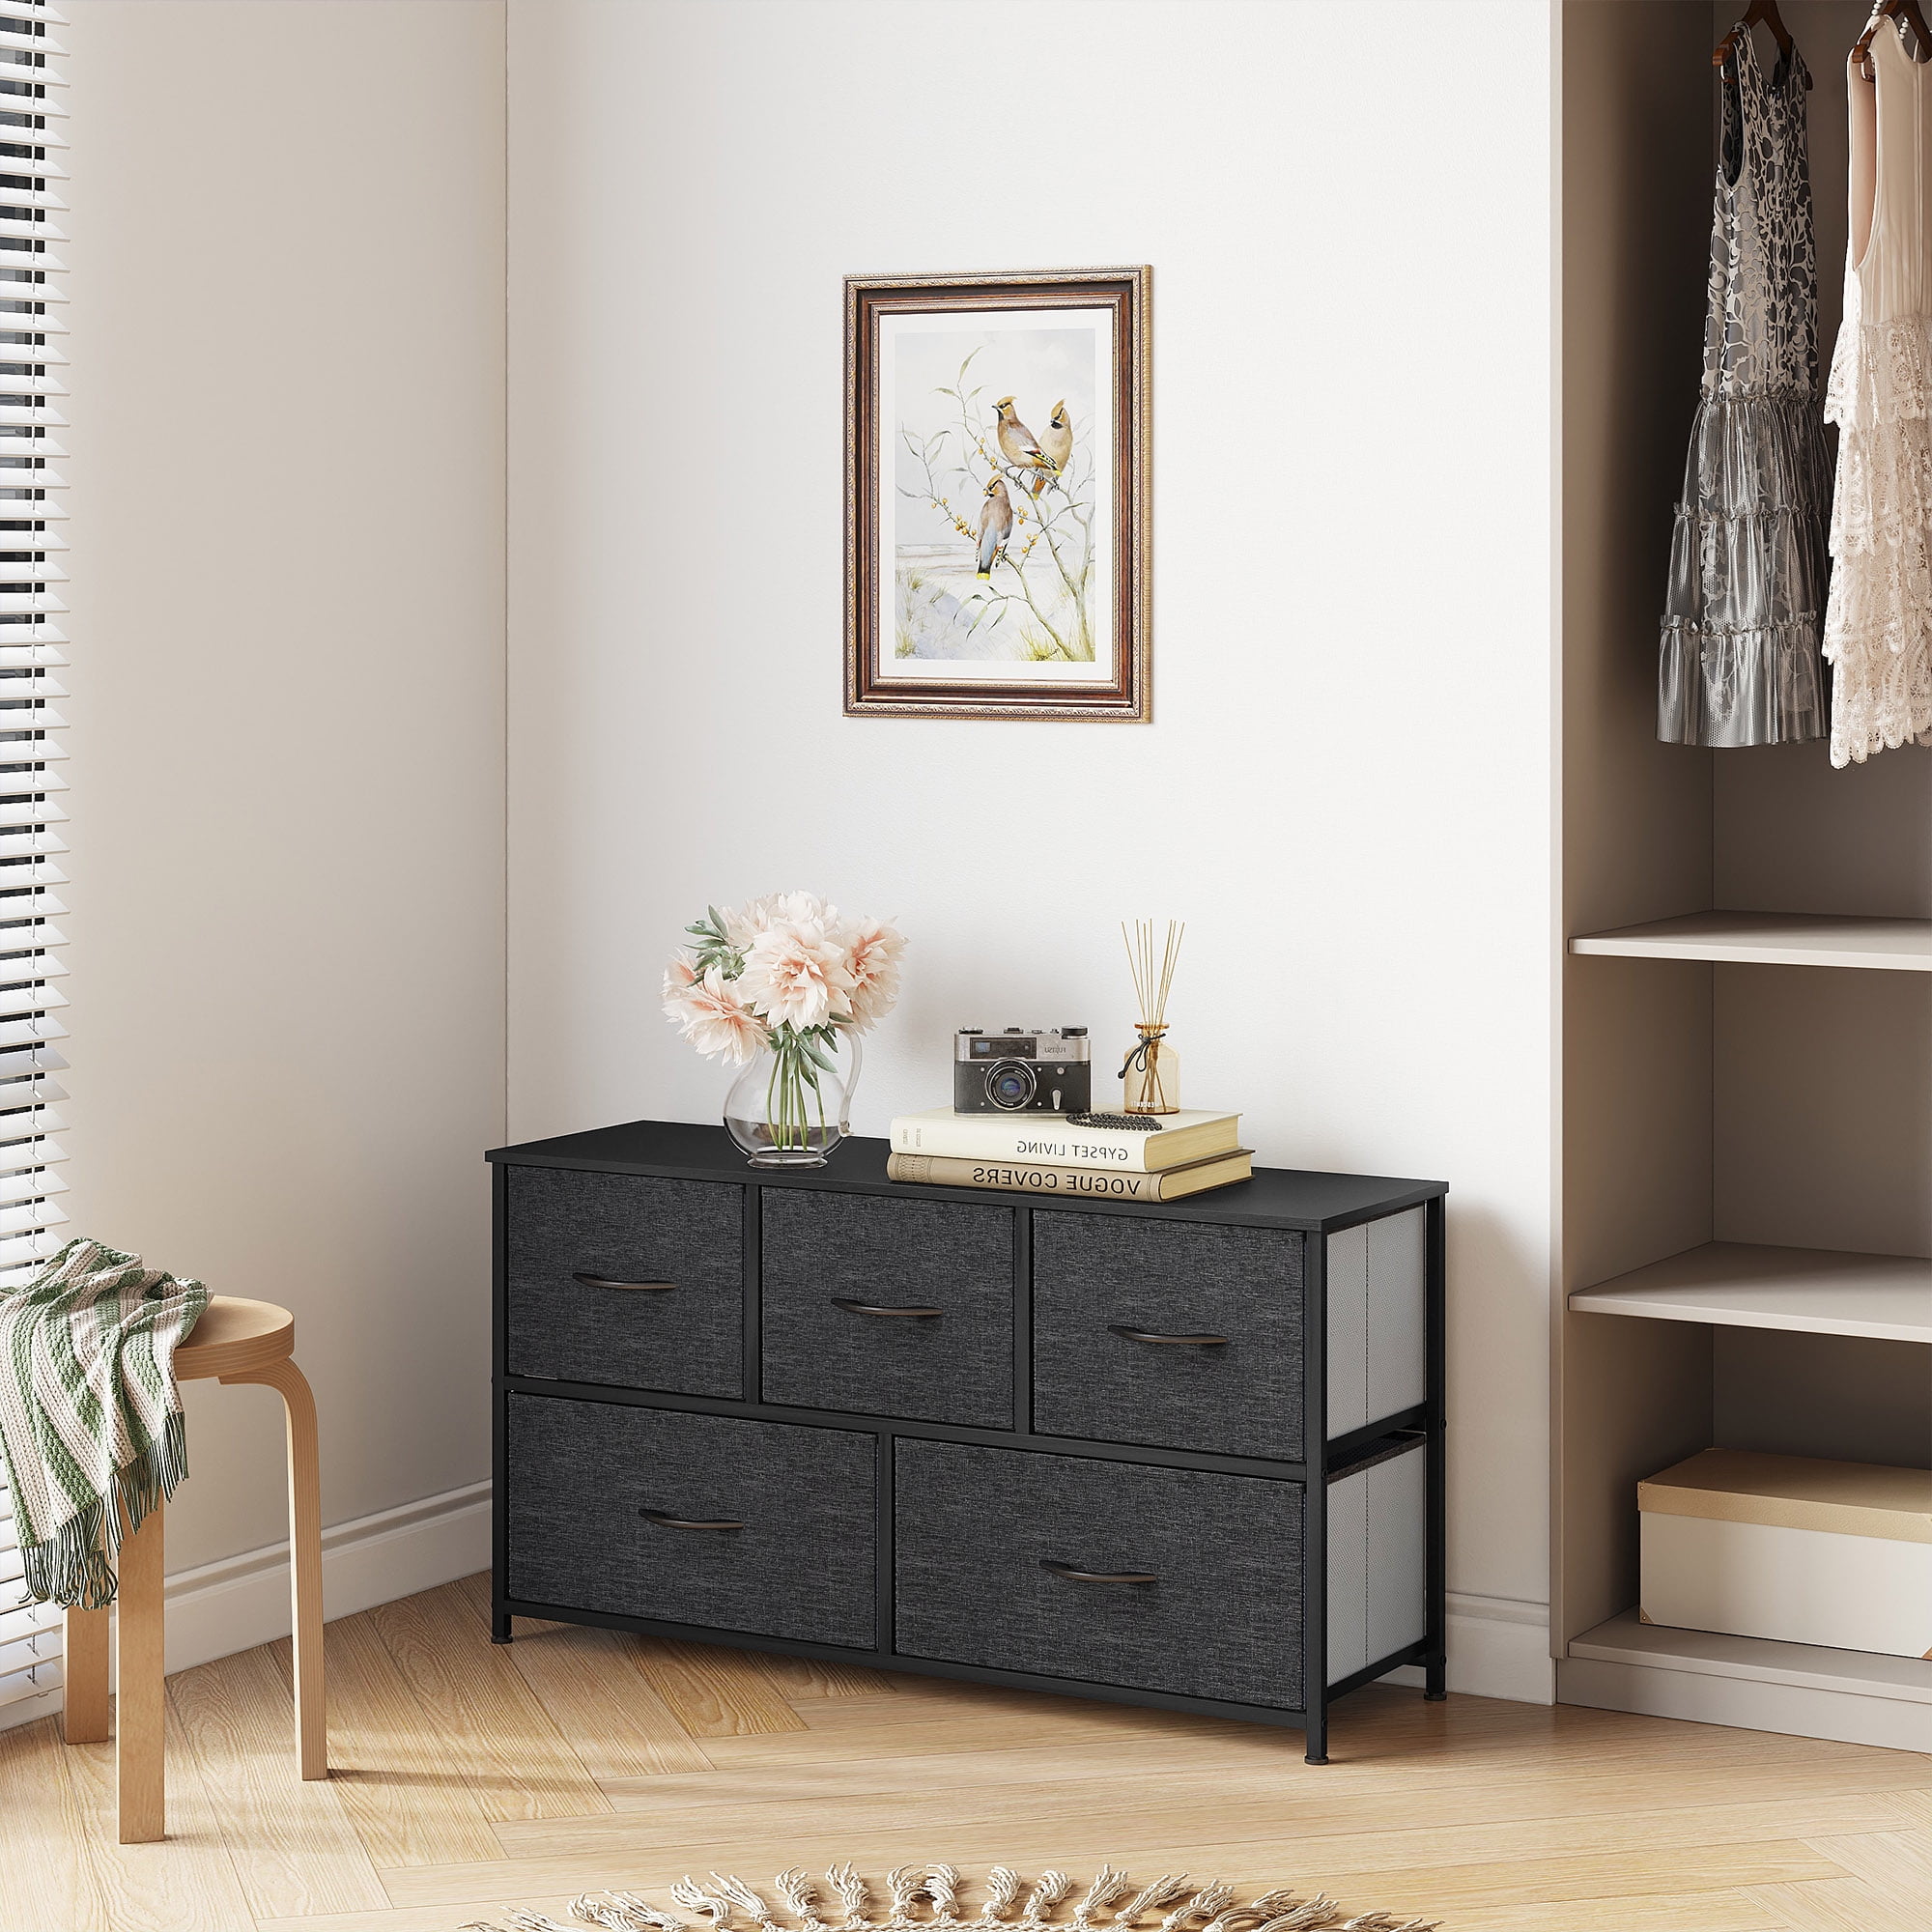 Dextrus 4 Drawer Storage Organizer Wooden Top Shelf for Closets, Black Grey